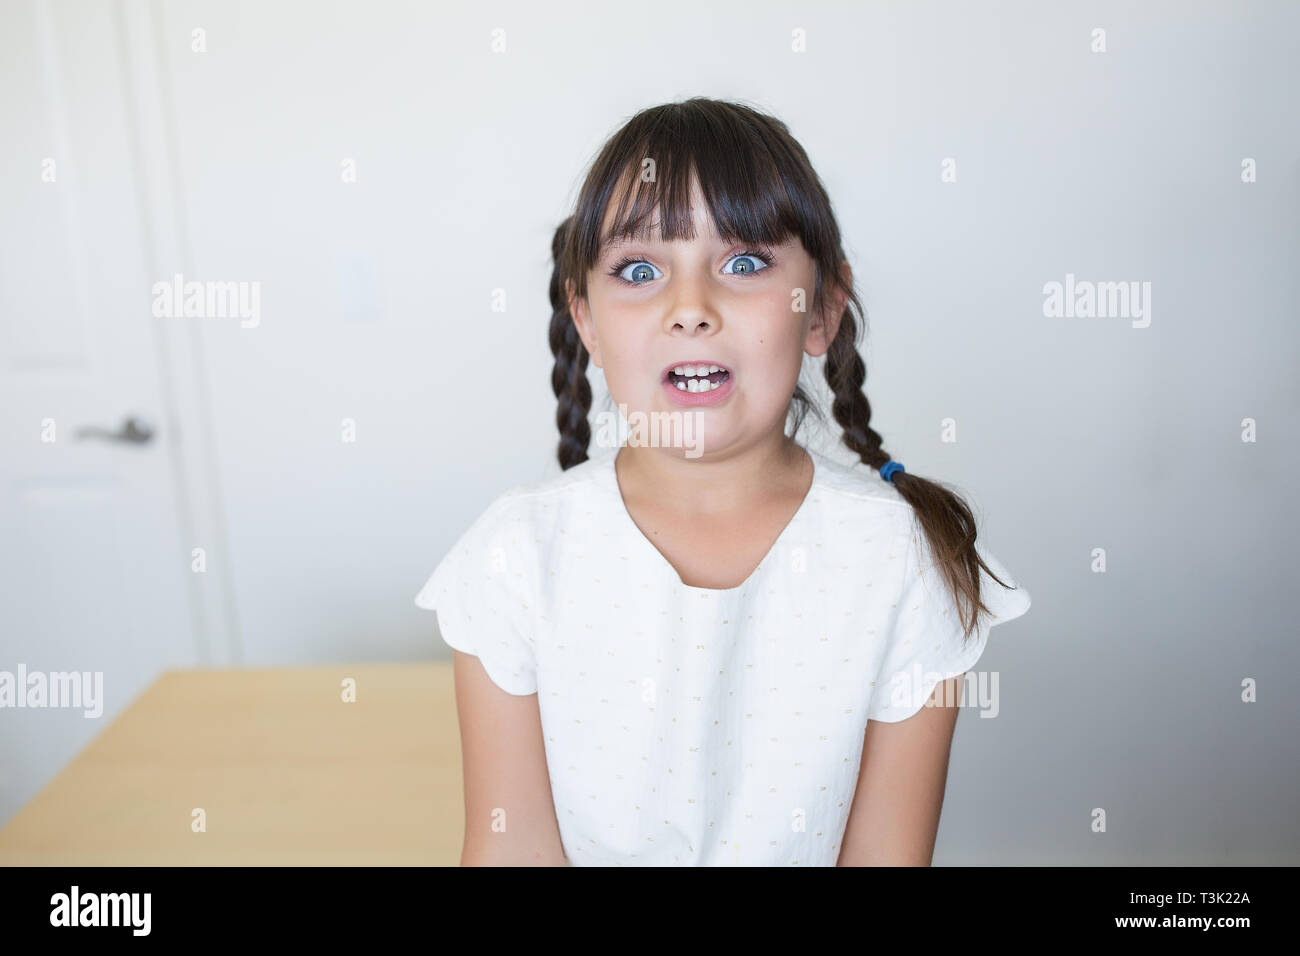 6-7 Jahre alten Mädchen mit einem erschrockenen Gesichtsausdruck Stockfoto